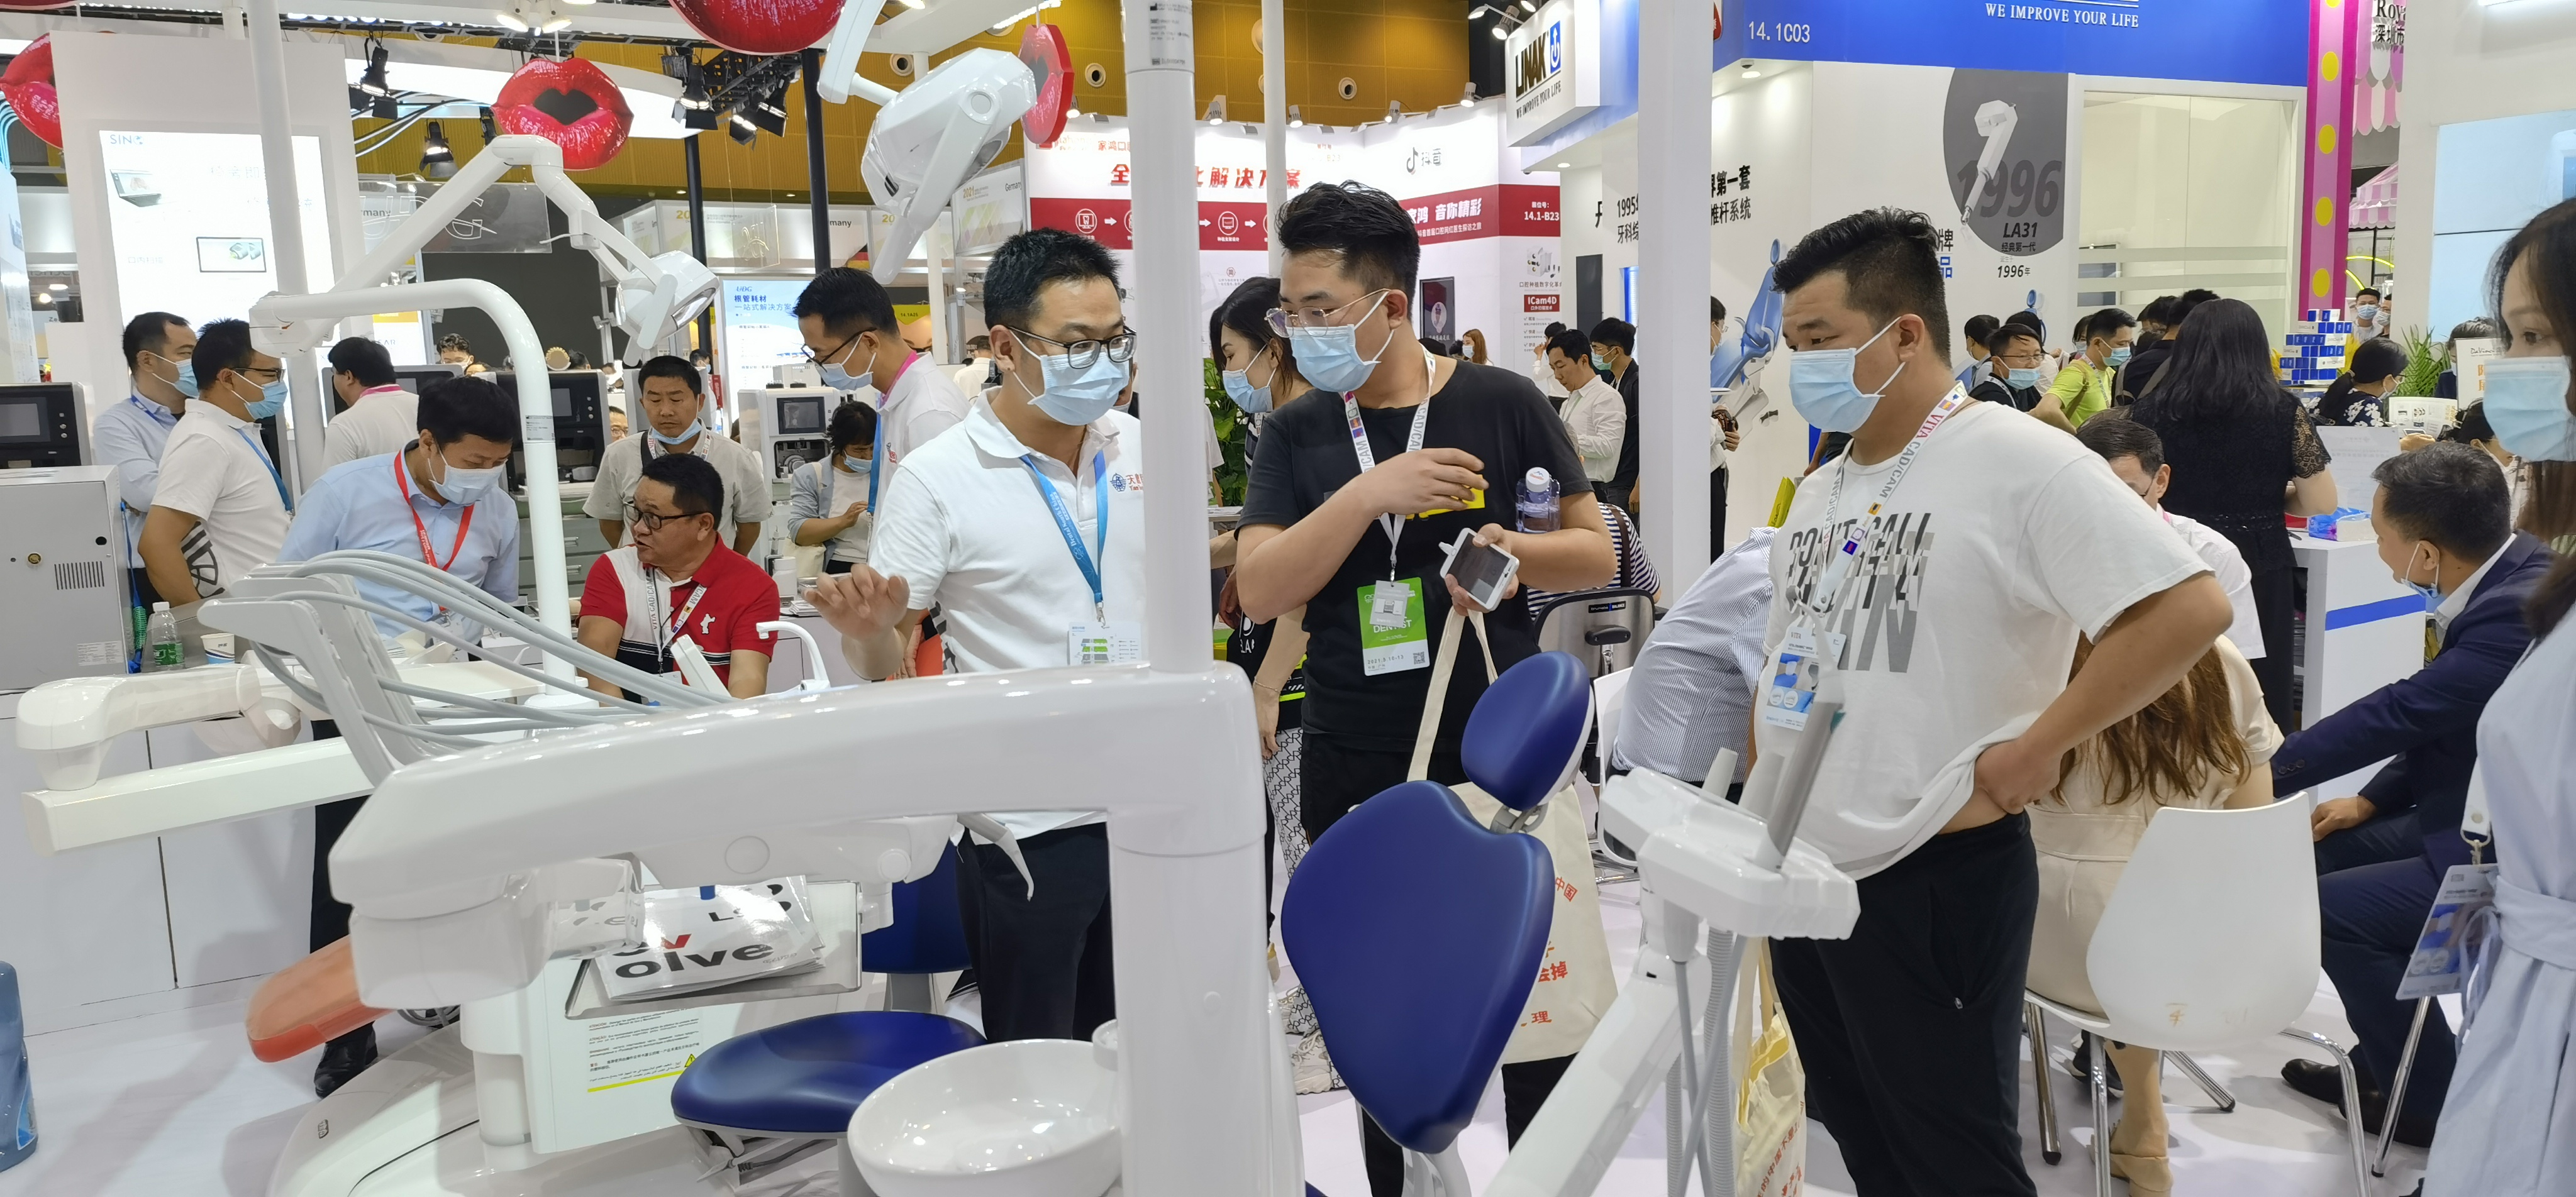 【天鹰医疗】参展 2021年华南国际口腔医疗器材展览会